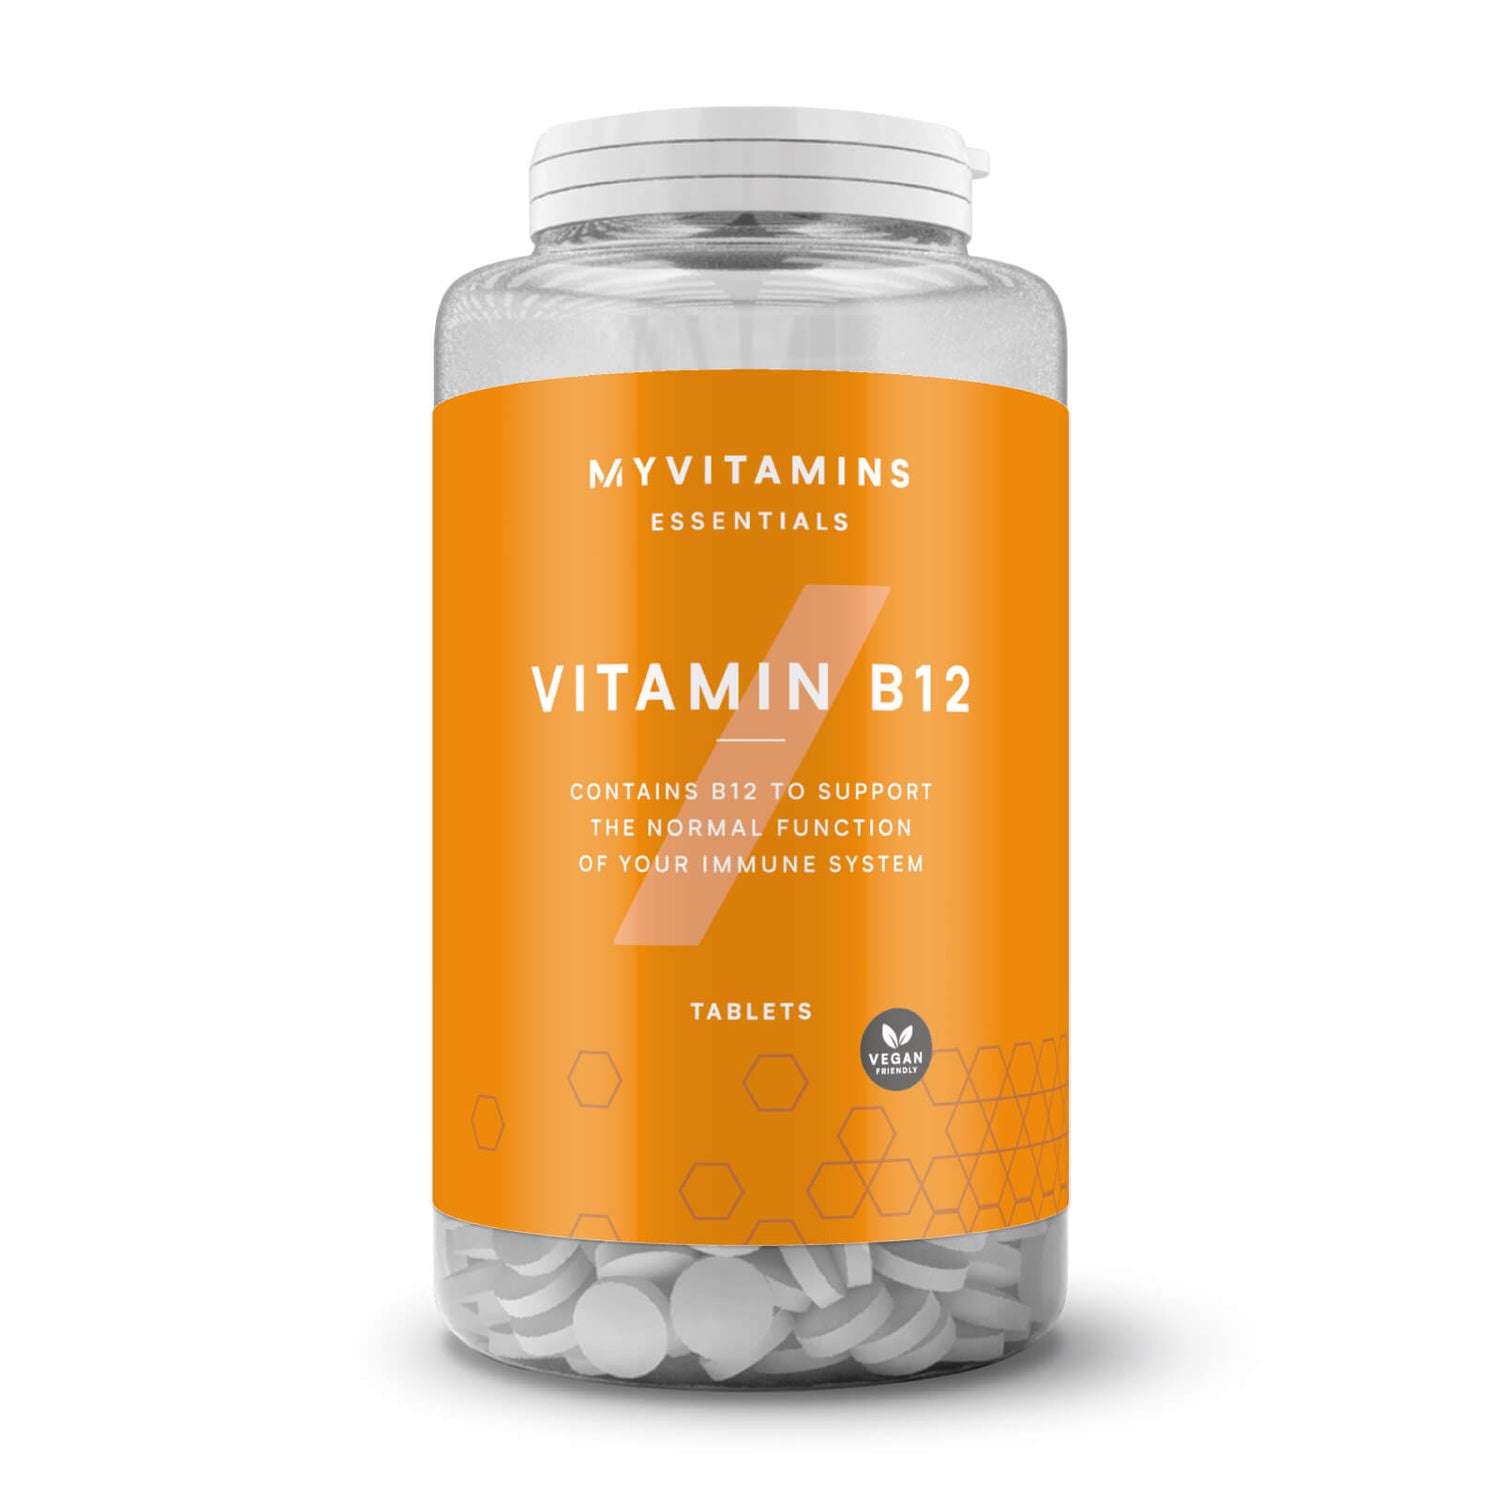 Витамин B12 - 60таблеток